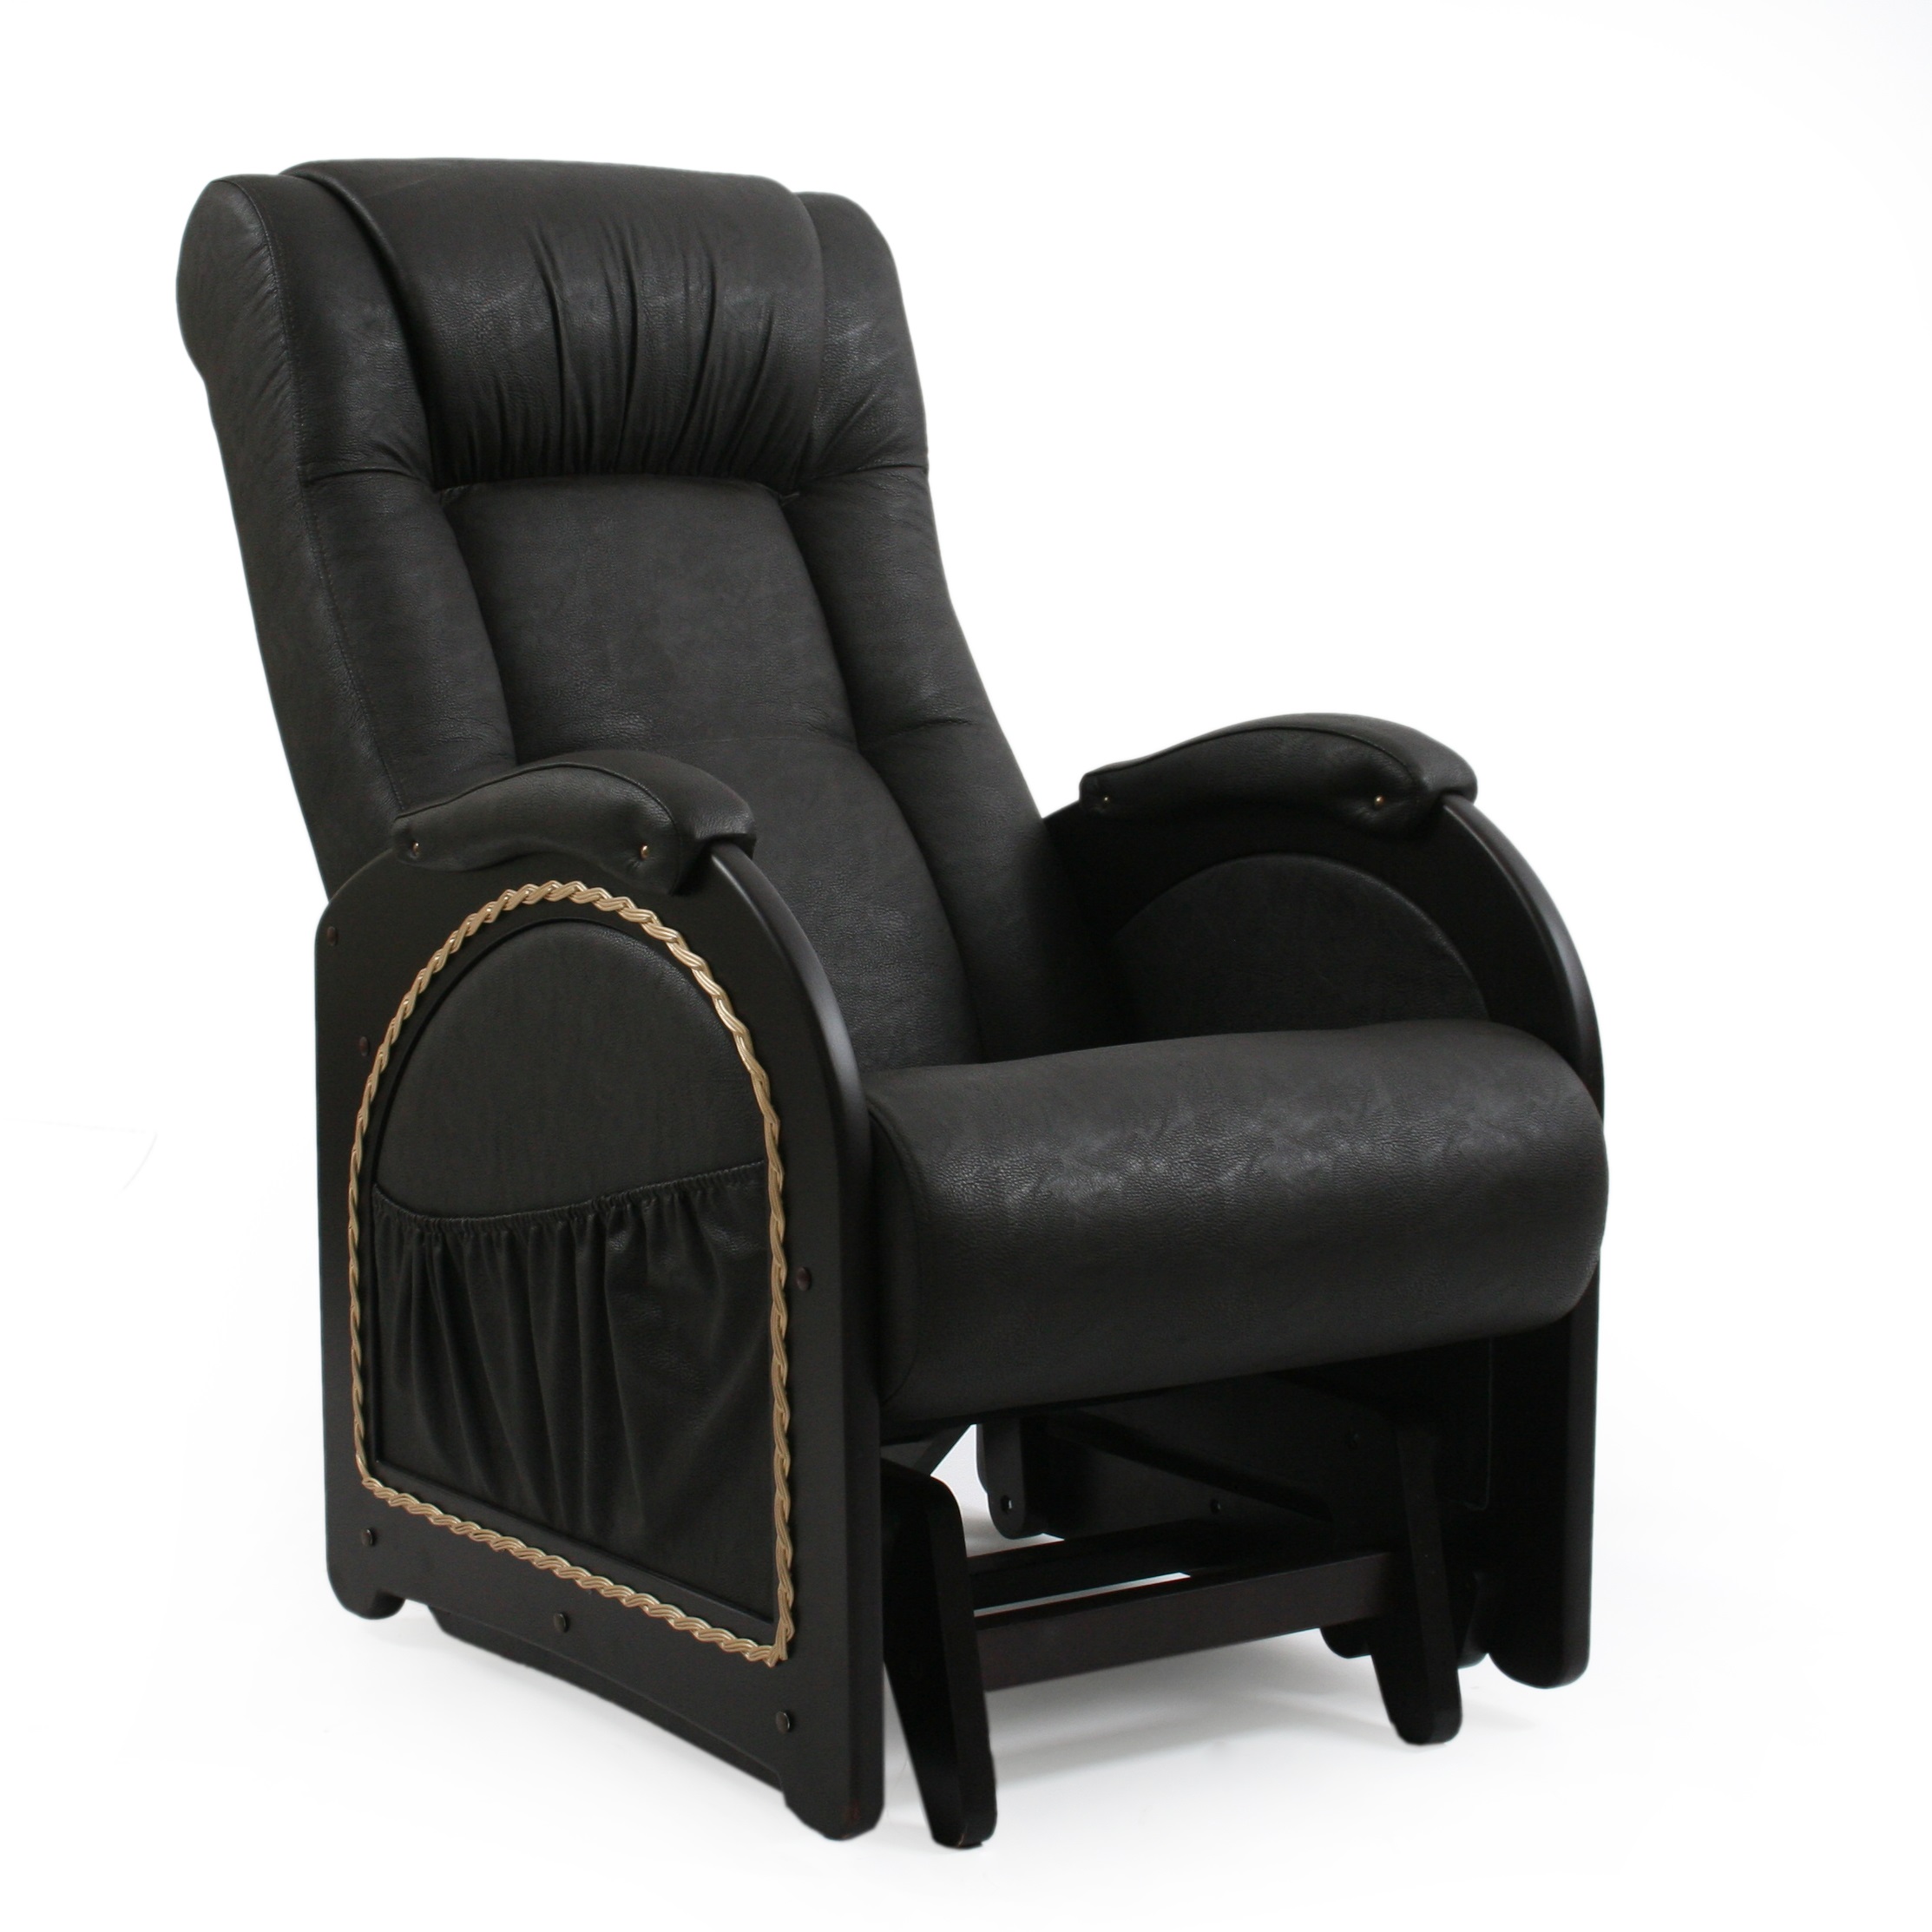 Кресло в спб. Кресло качалка глайдер комфорт. Кресло-глайдер модель 48. Импекс кресло глайдер модель 48. Кресло качалка глайдер модель 48.